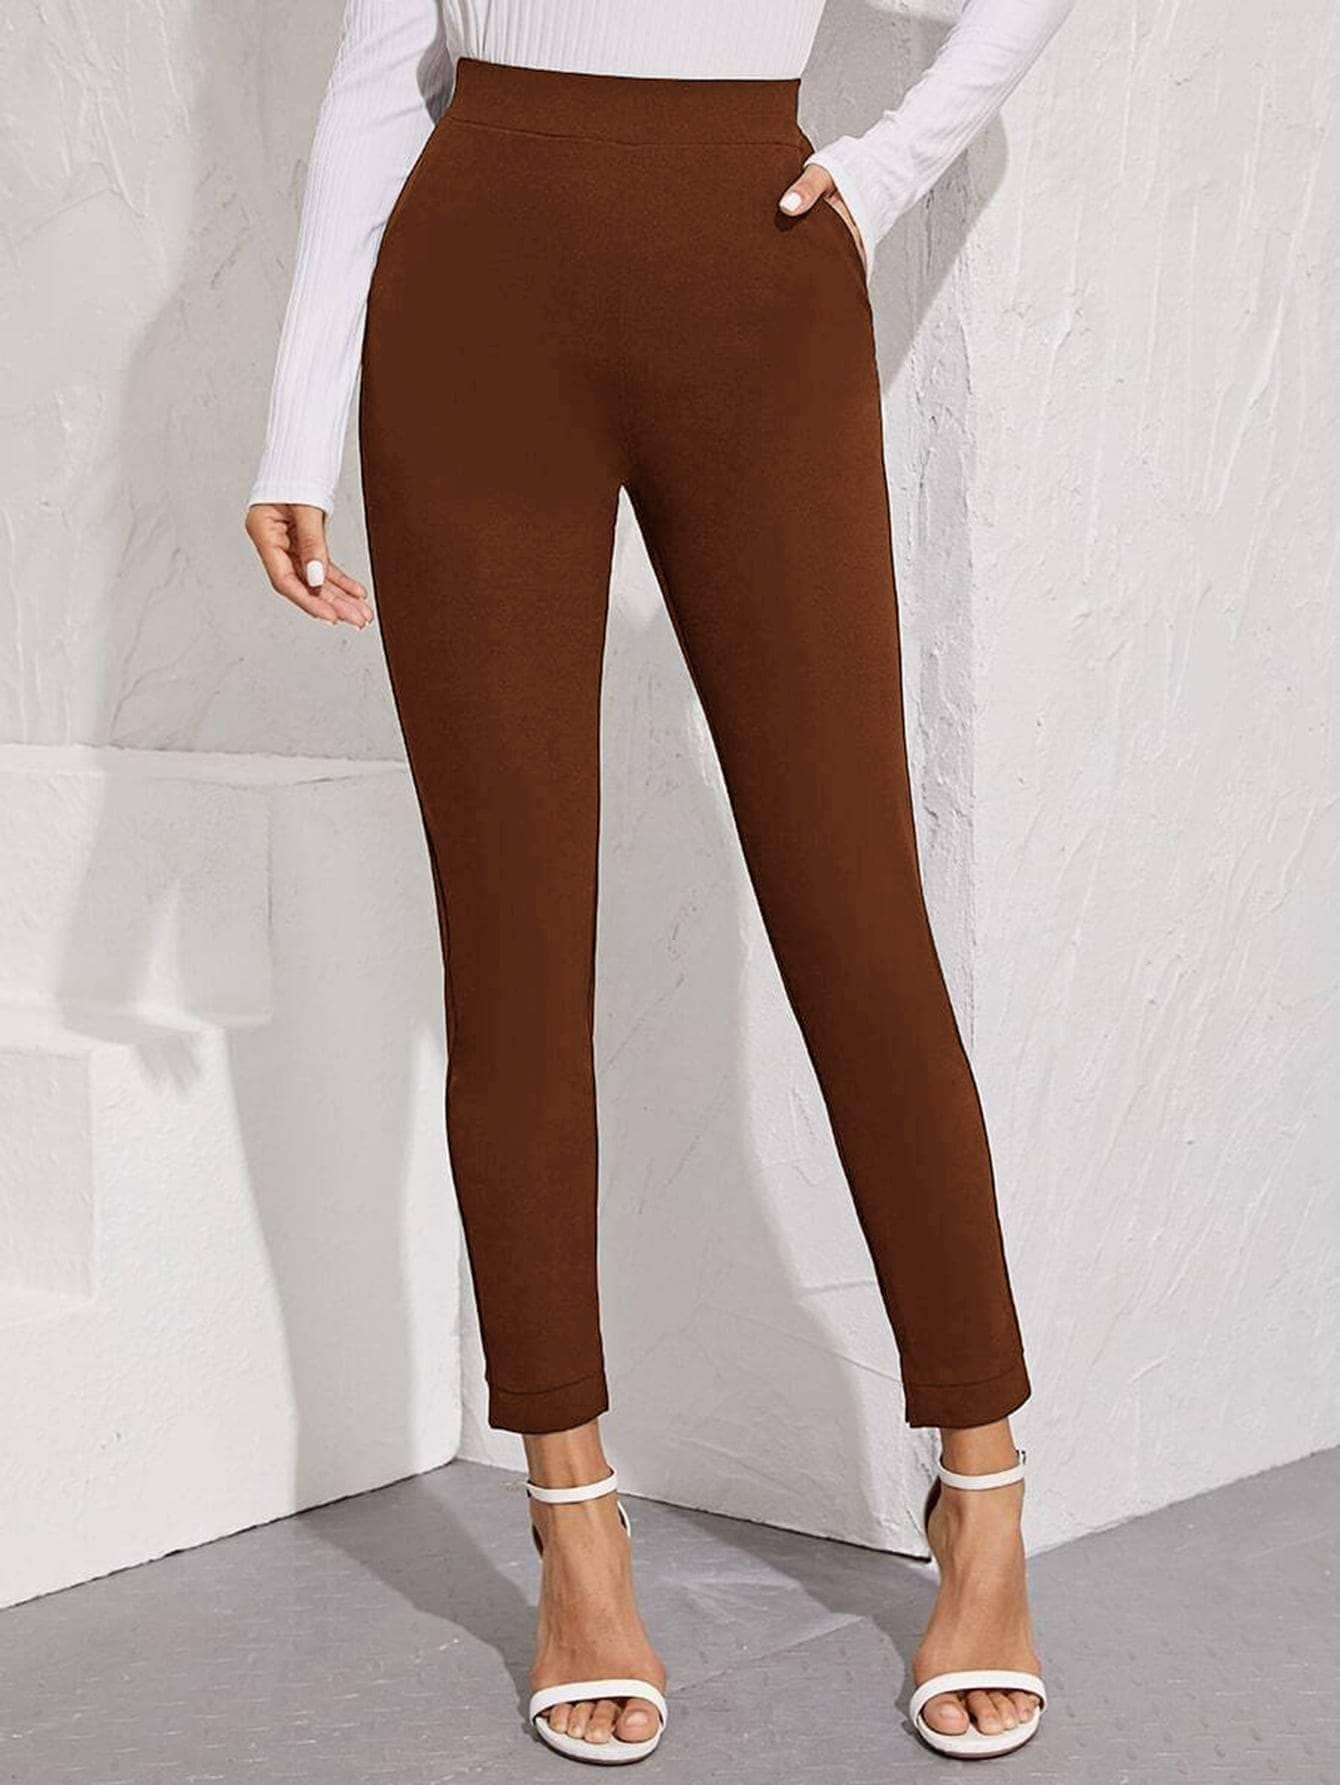 Marron Chocolate / XS pantalones bajo con abertura de cintura elástica